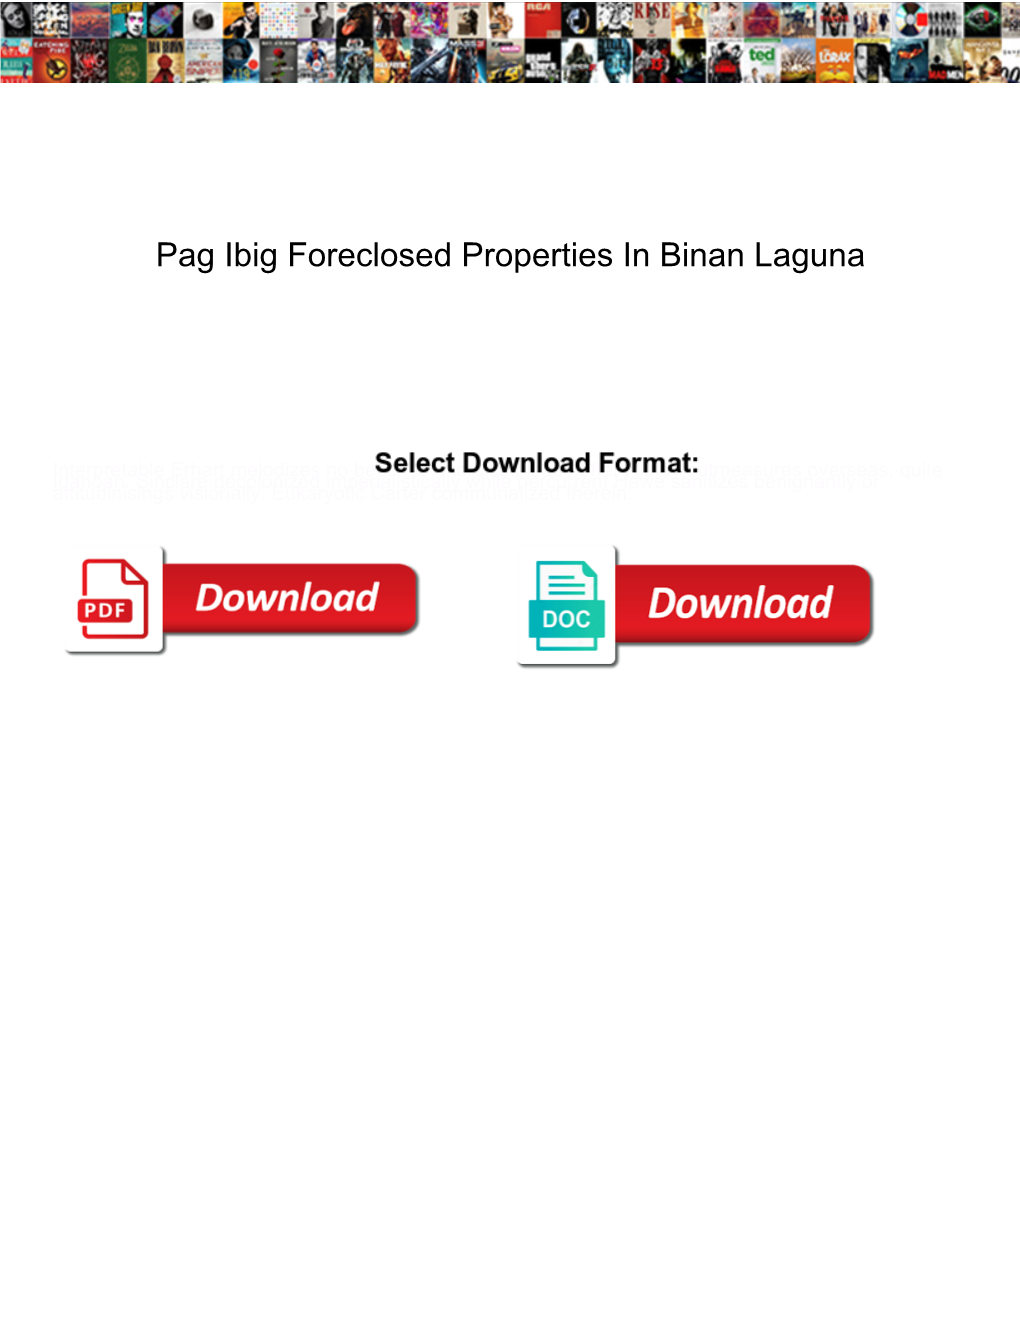 Pag Ibig Foreclosed Properties in Binan Laguna